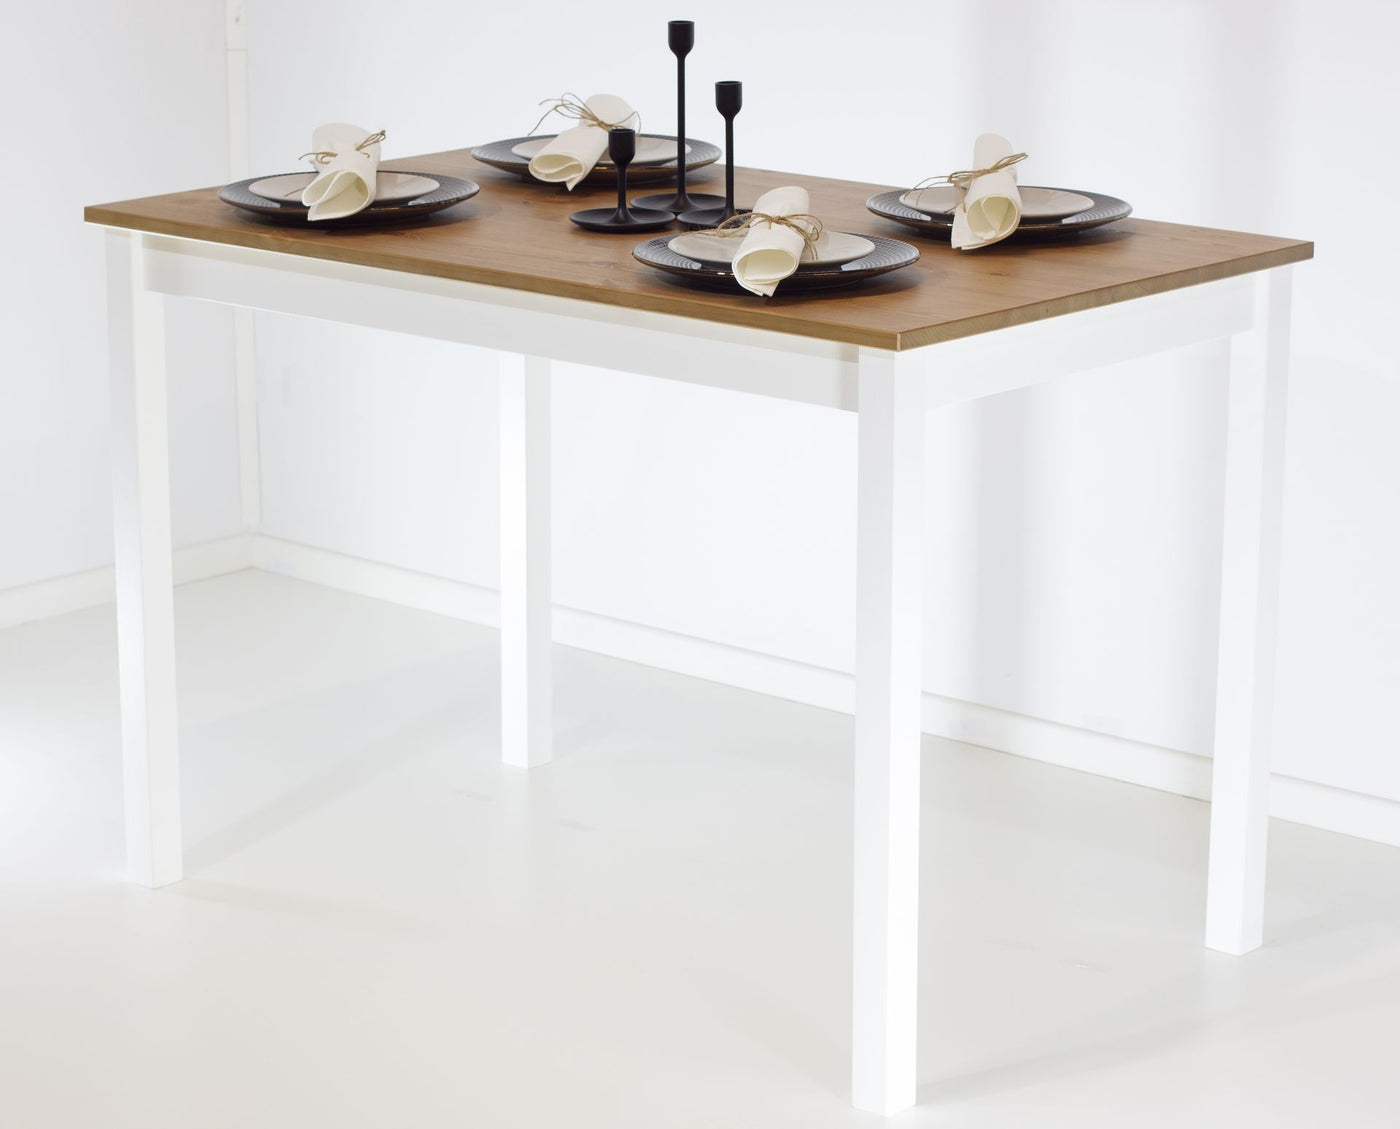 Vesa ruokapöytä 110x68cm, natural/valkoinen - Mööpeli.com